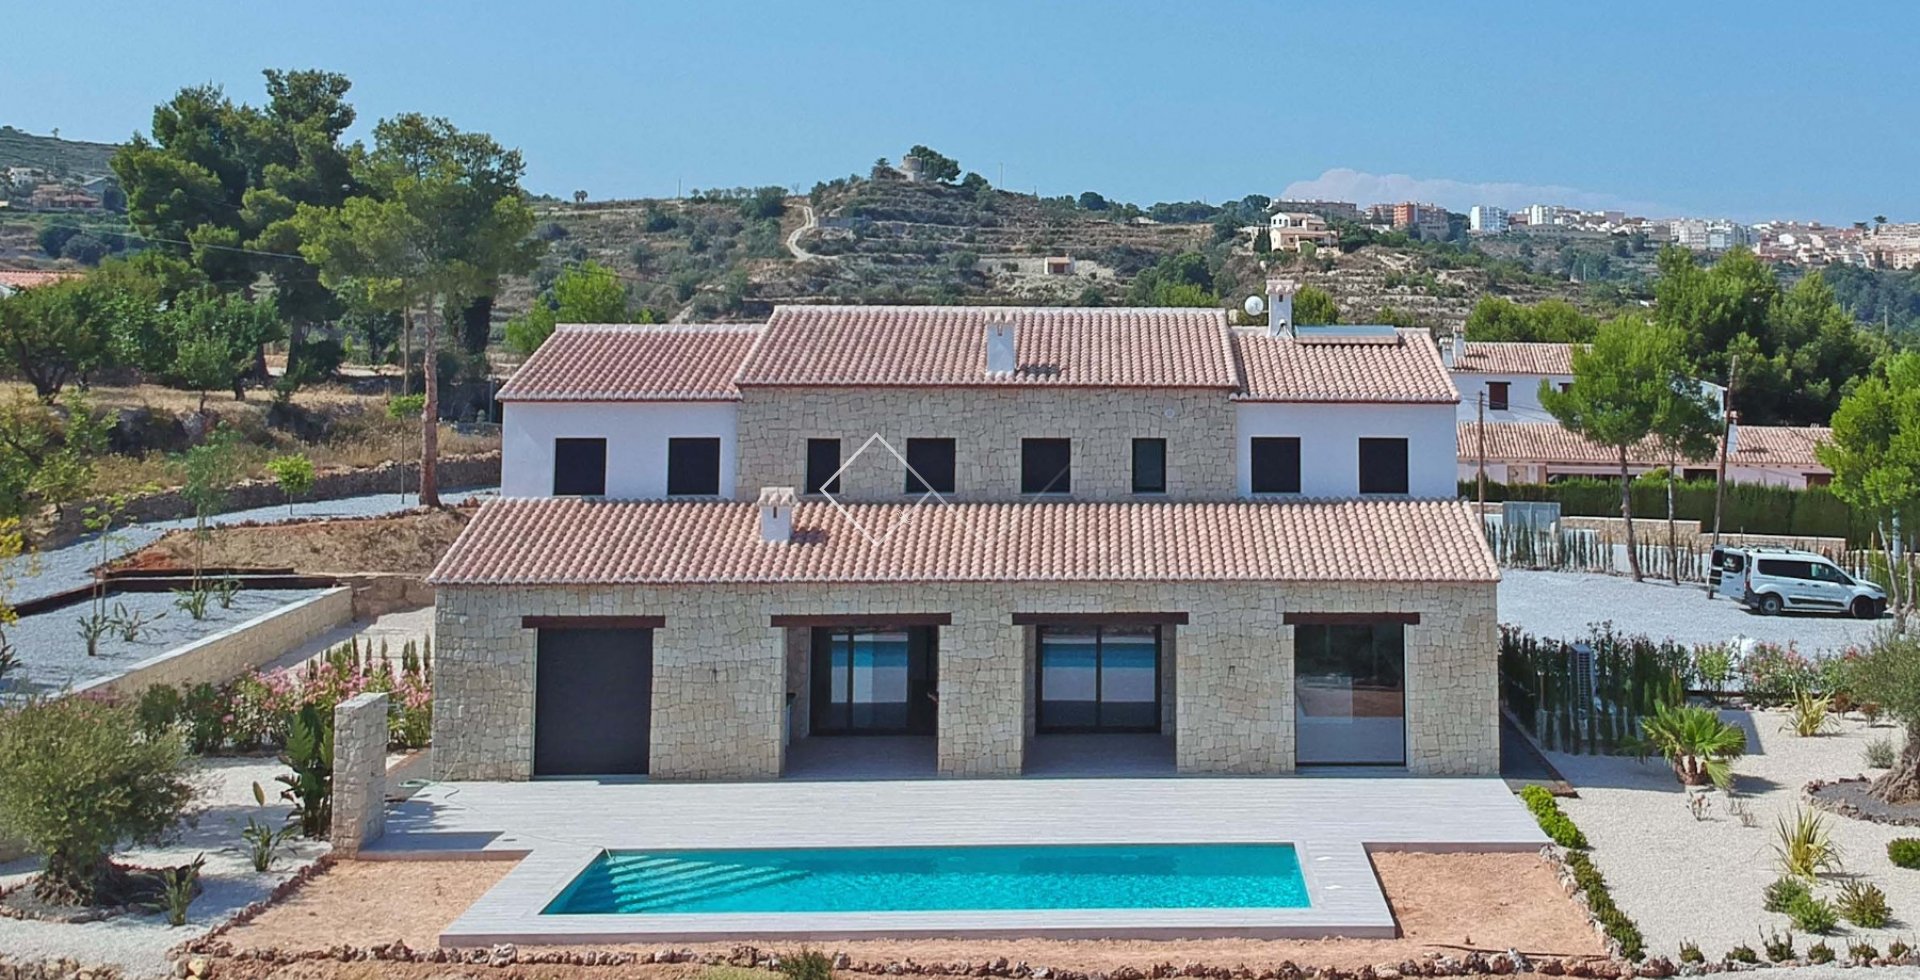 Grote finca met zwembad en tuin - Nieuwbouw finca stijl villa met prachtig uitzicht op zee te koop in Benissa